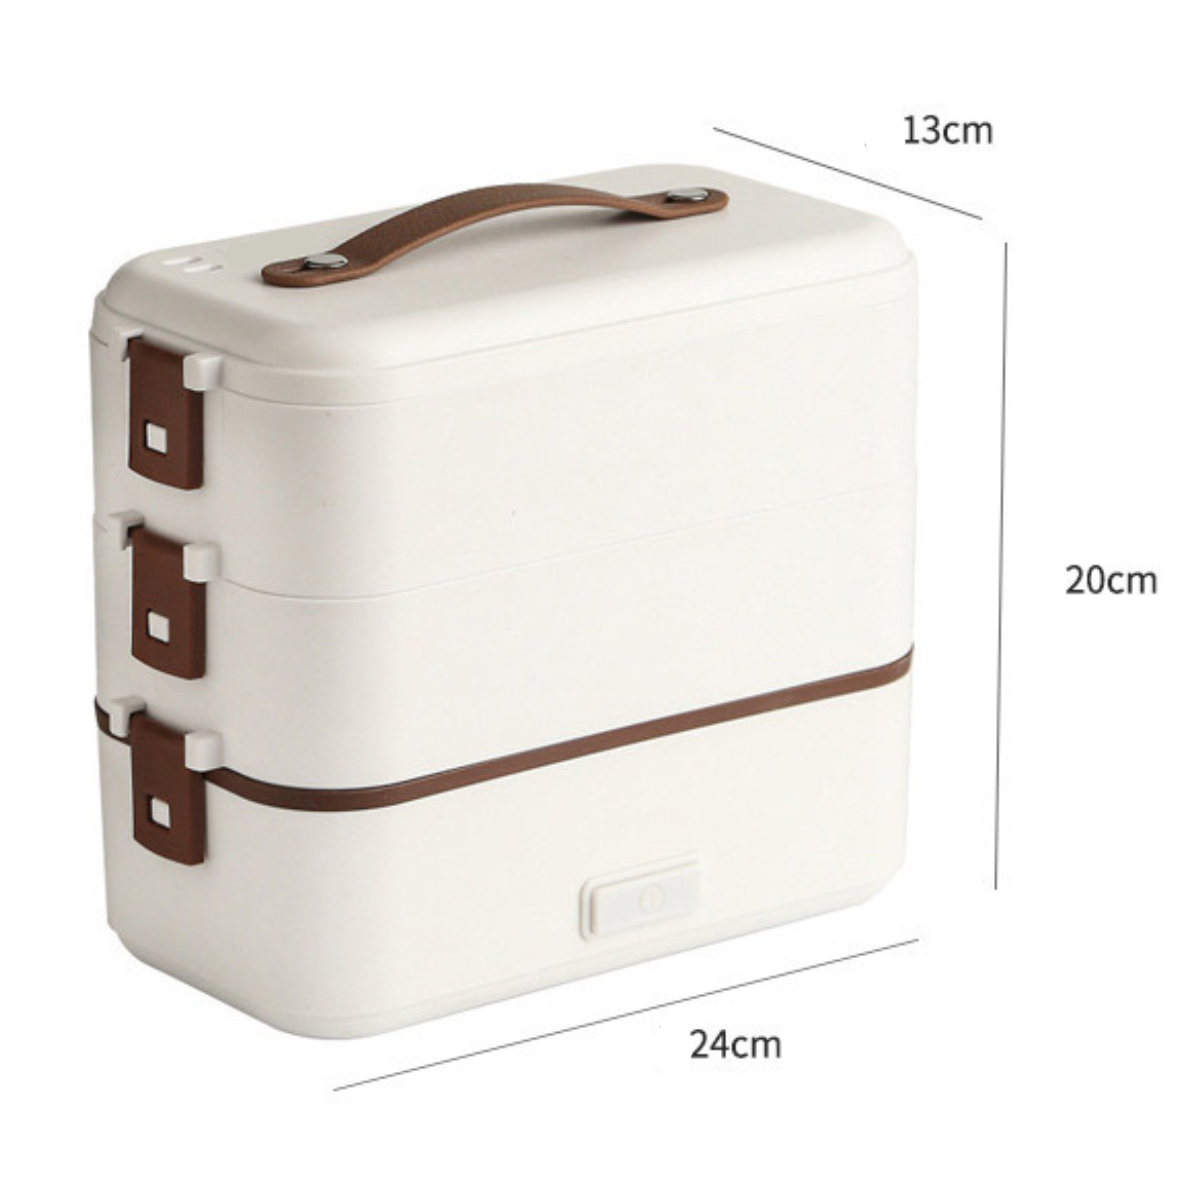 UWOT reinigen leicht dreischichtige Lunchbox: Lunch-Box zu tragbar&langlebig, isolierte 300W schnelle Erwärmung,